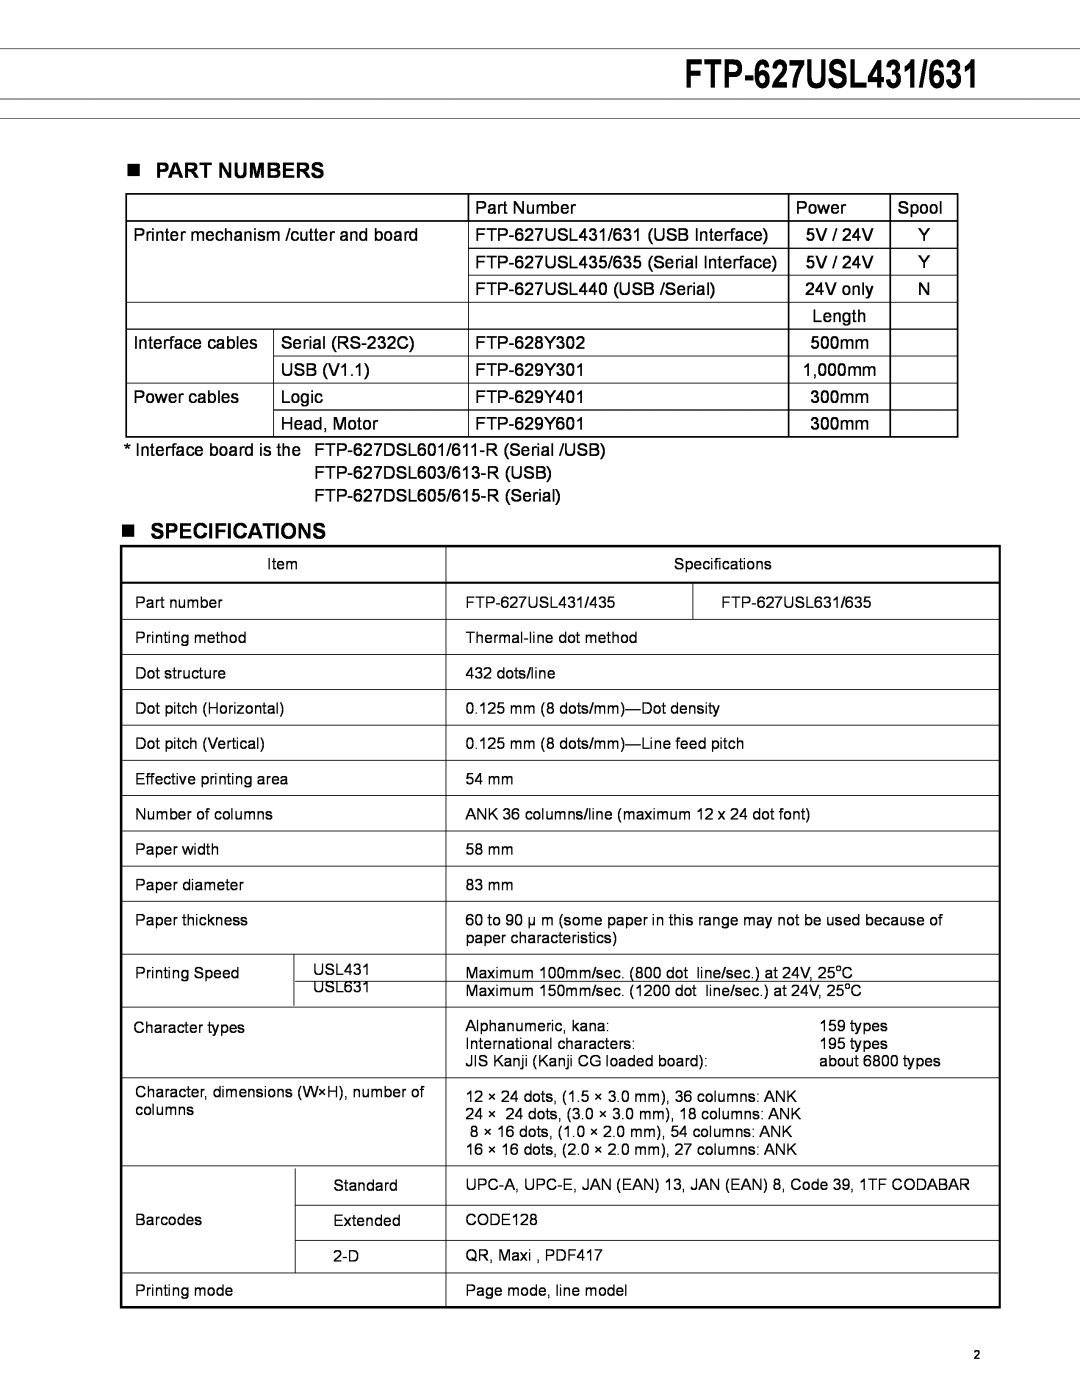 Fujitsu FTP-627USL631 manual FTP-627USL431/631, n Part numbers, n SPECIFICATIONS 